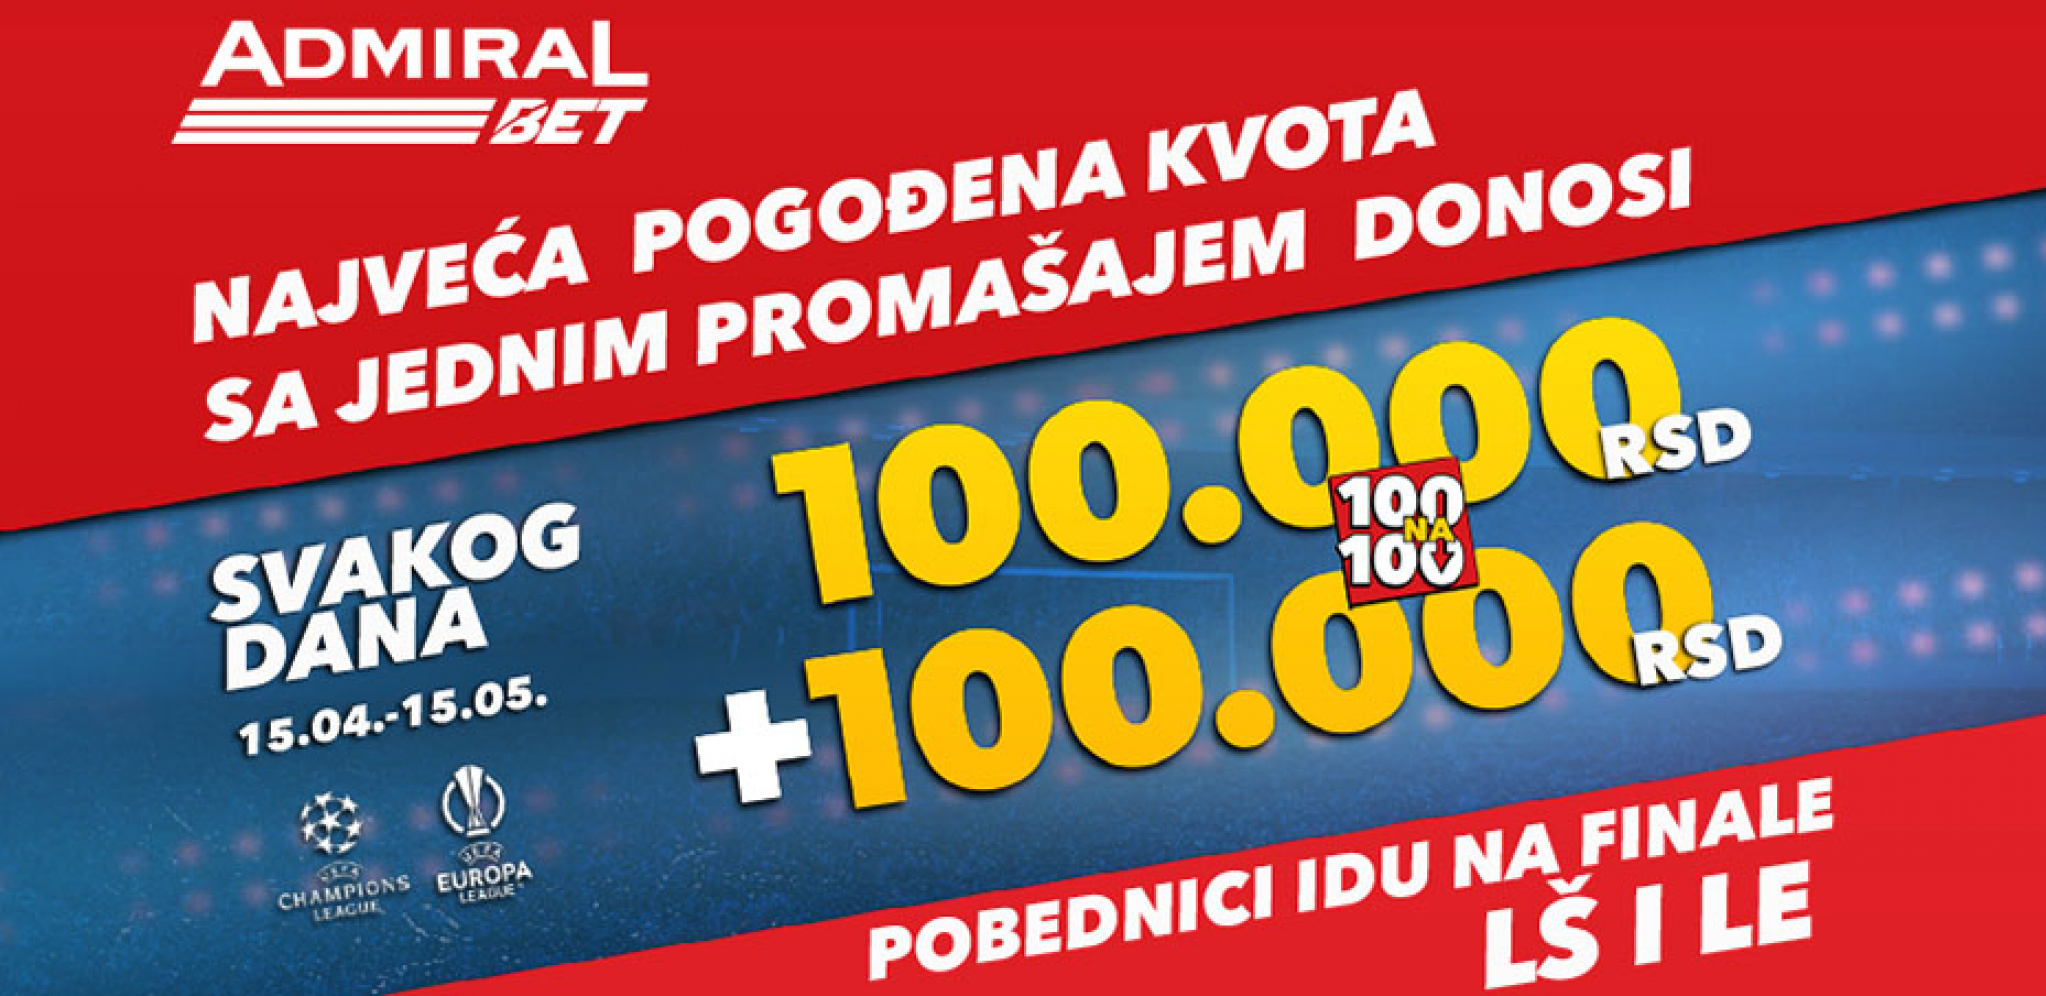 AKCIJA IZ SNOVA AdmiralBet promocija – 2 x 100 000 dinara svakog dana i put na finala LŠ i LE!